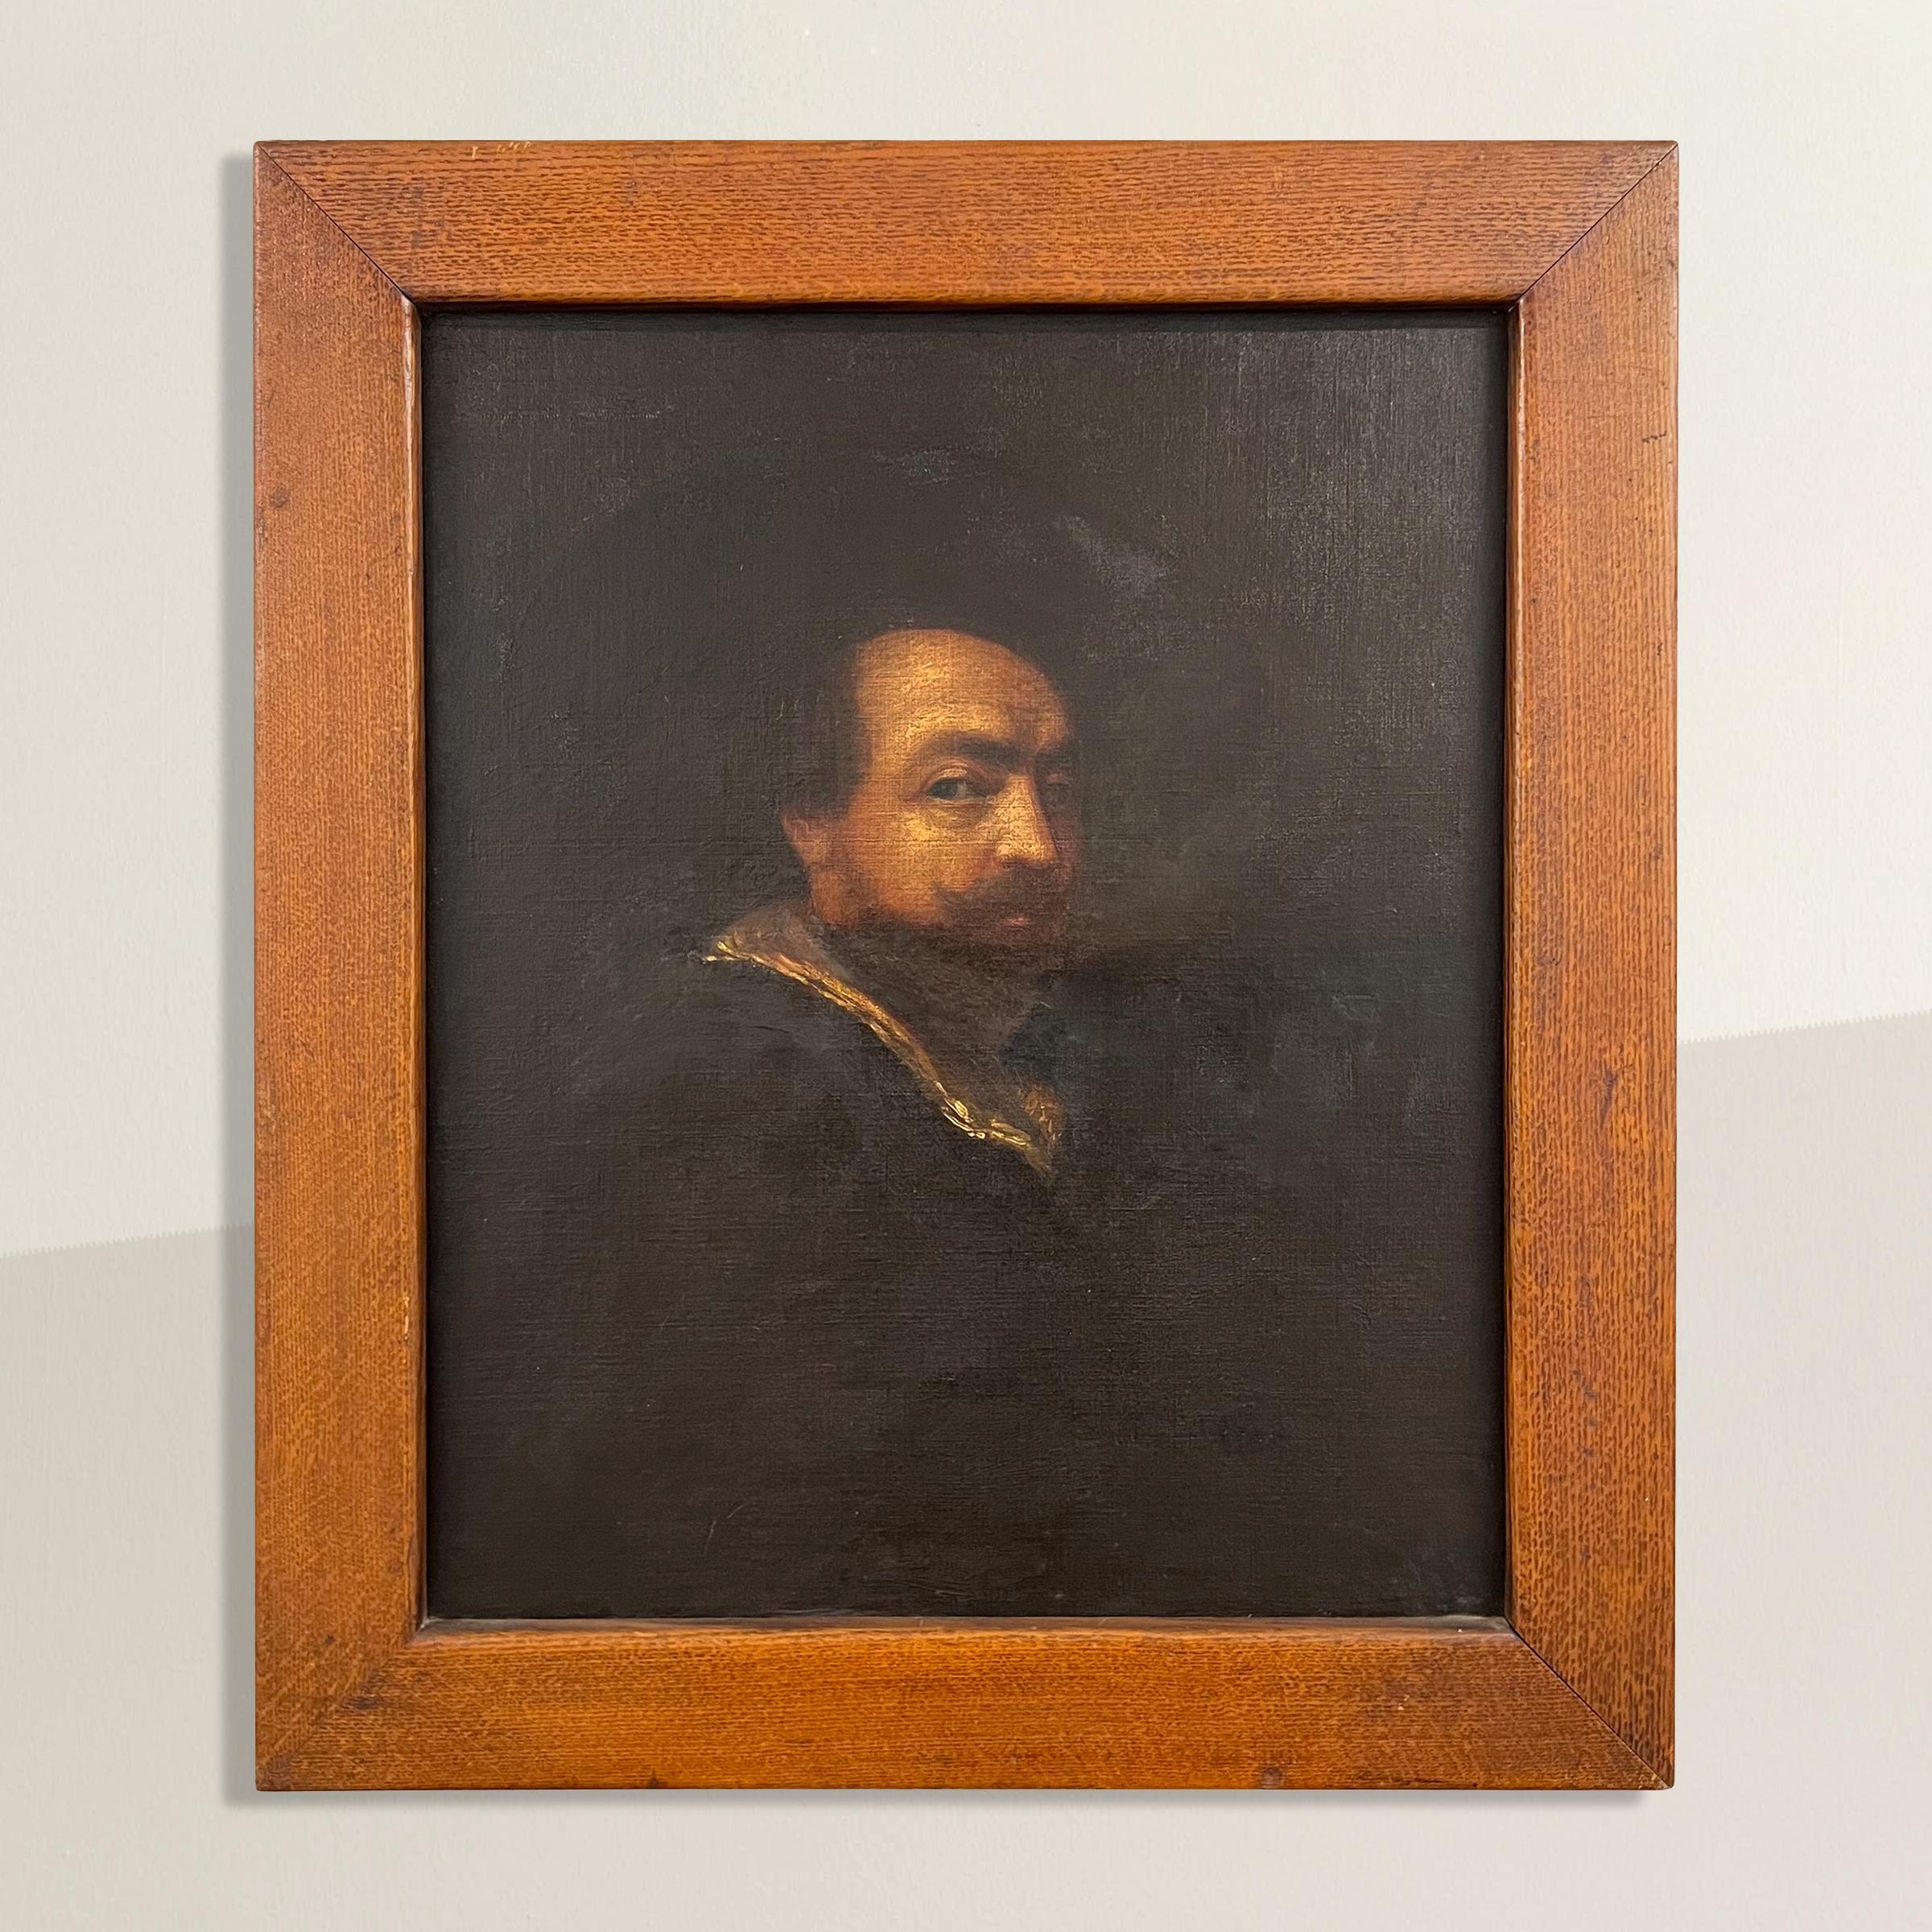 Dans cette passionnante étude d'étudiants en art du XIXe siècle, nous découvrons un fascinant Self-Portrait réalisé par l'éminent maître baroque, Peters Paul Rubens. Le tableau représente Artistics coiffé d'un chapeau à larges bords, symbole de sa